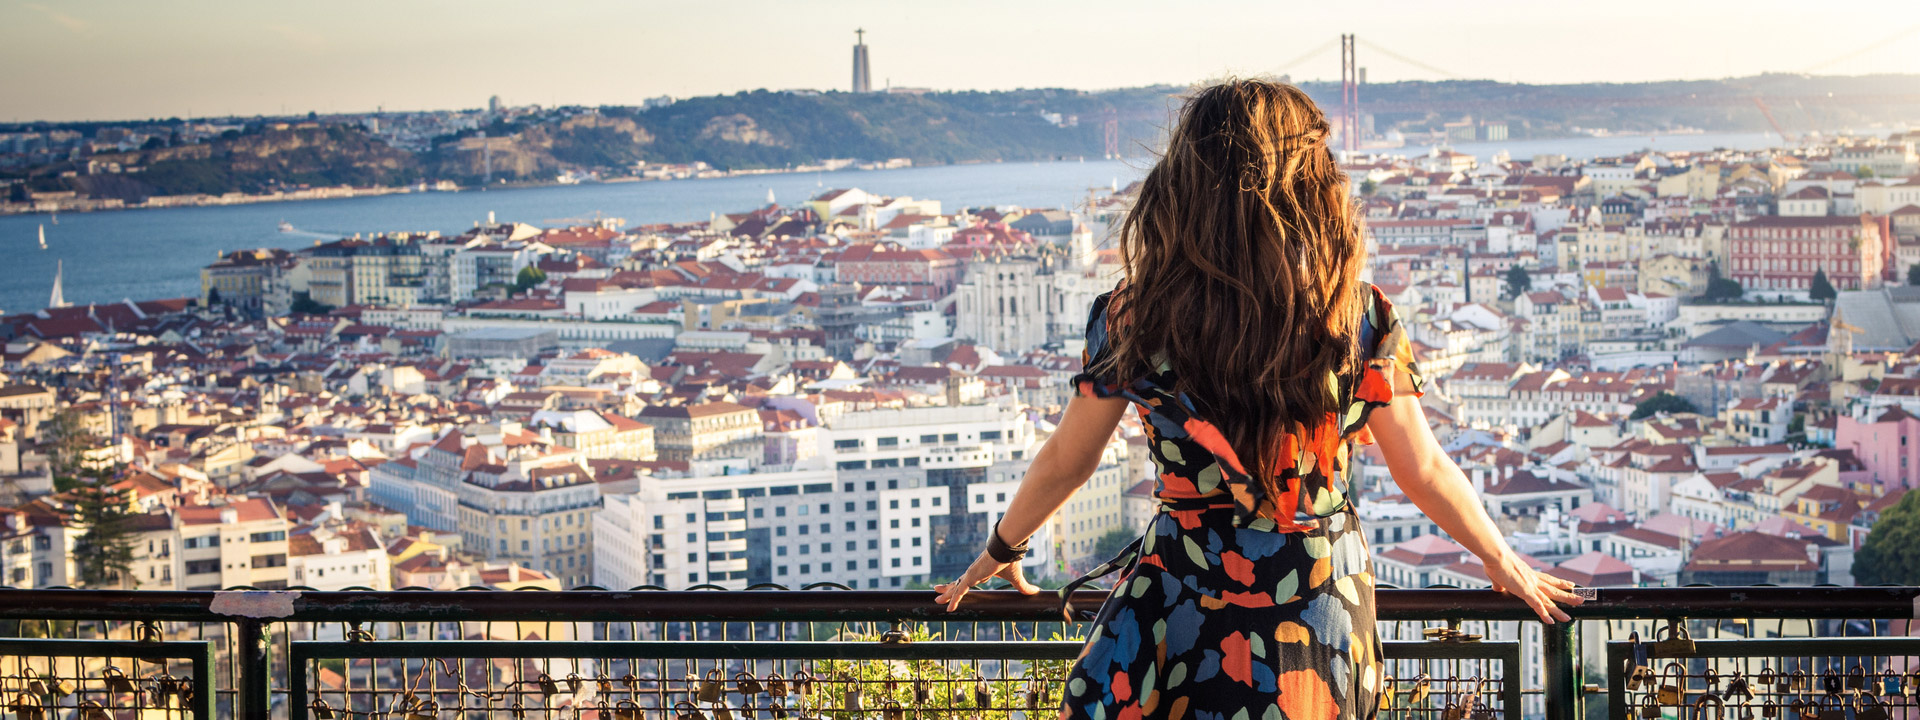 Lisbon: Europe’s Best-Kept Summer Getaway Secret